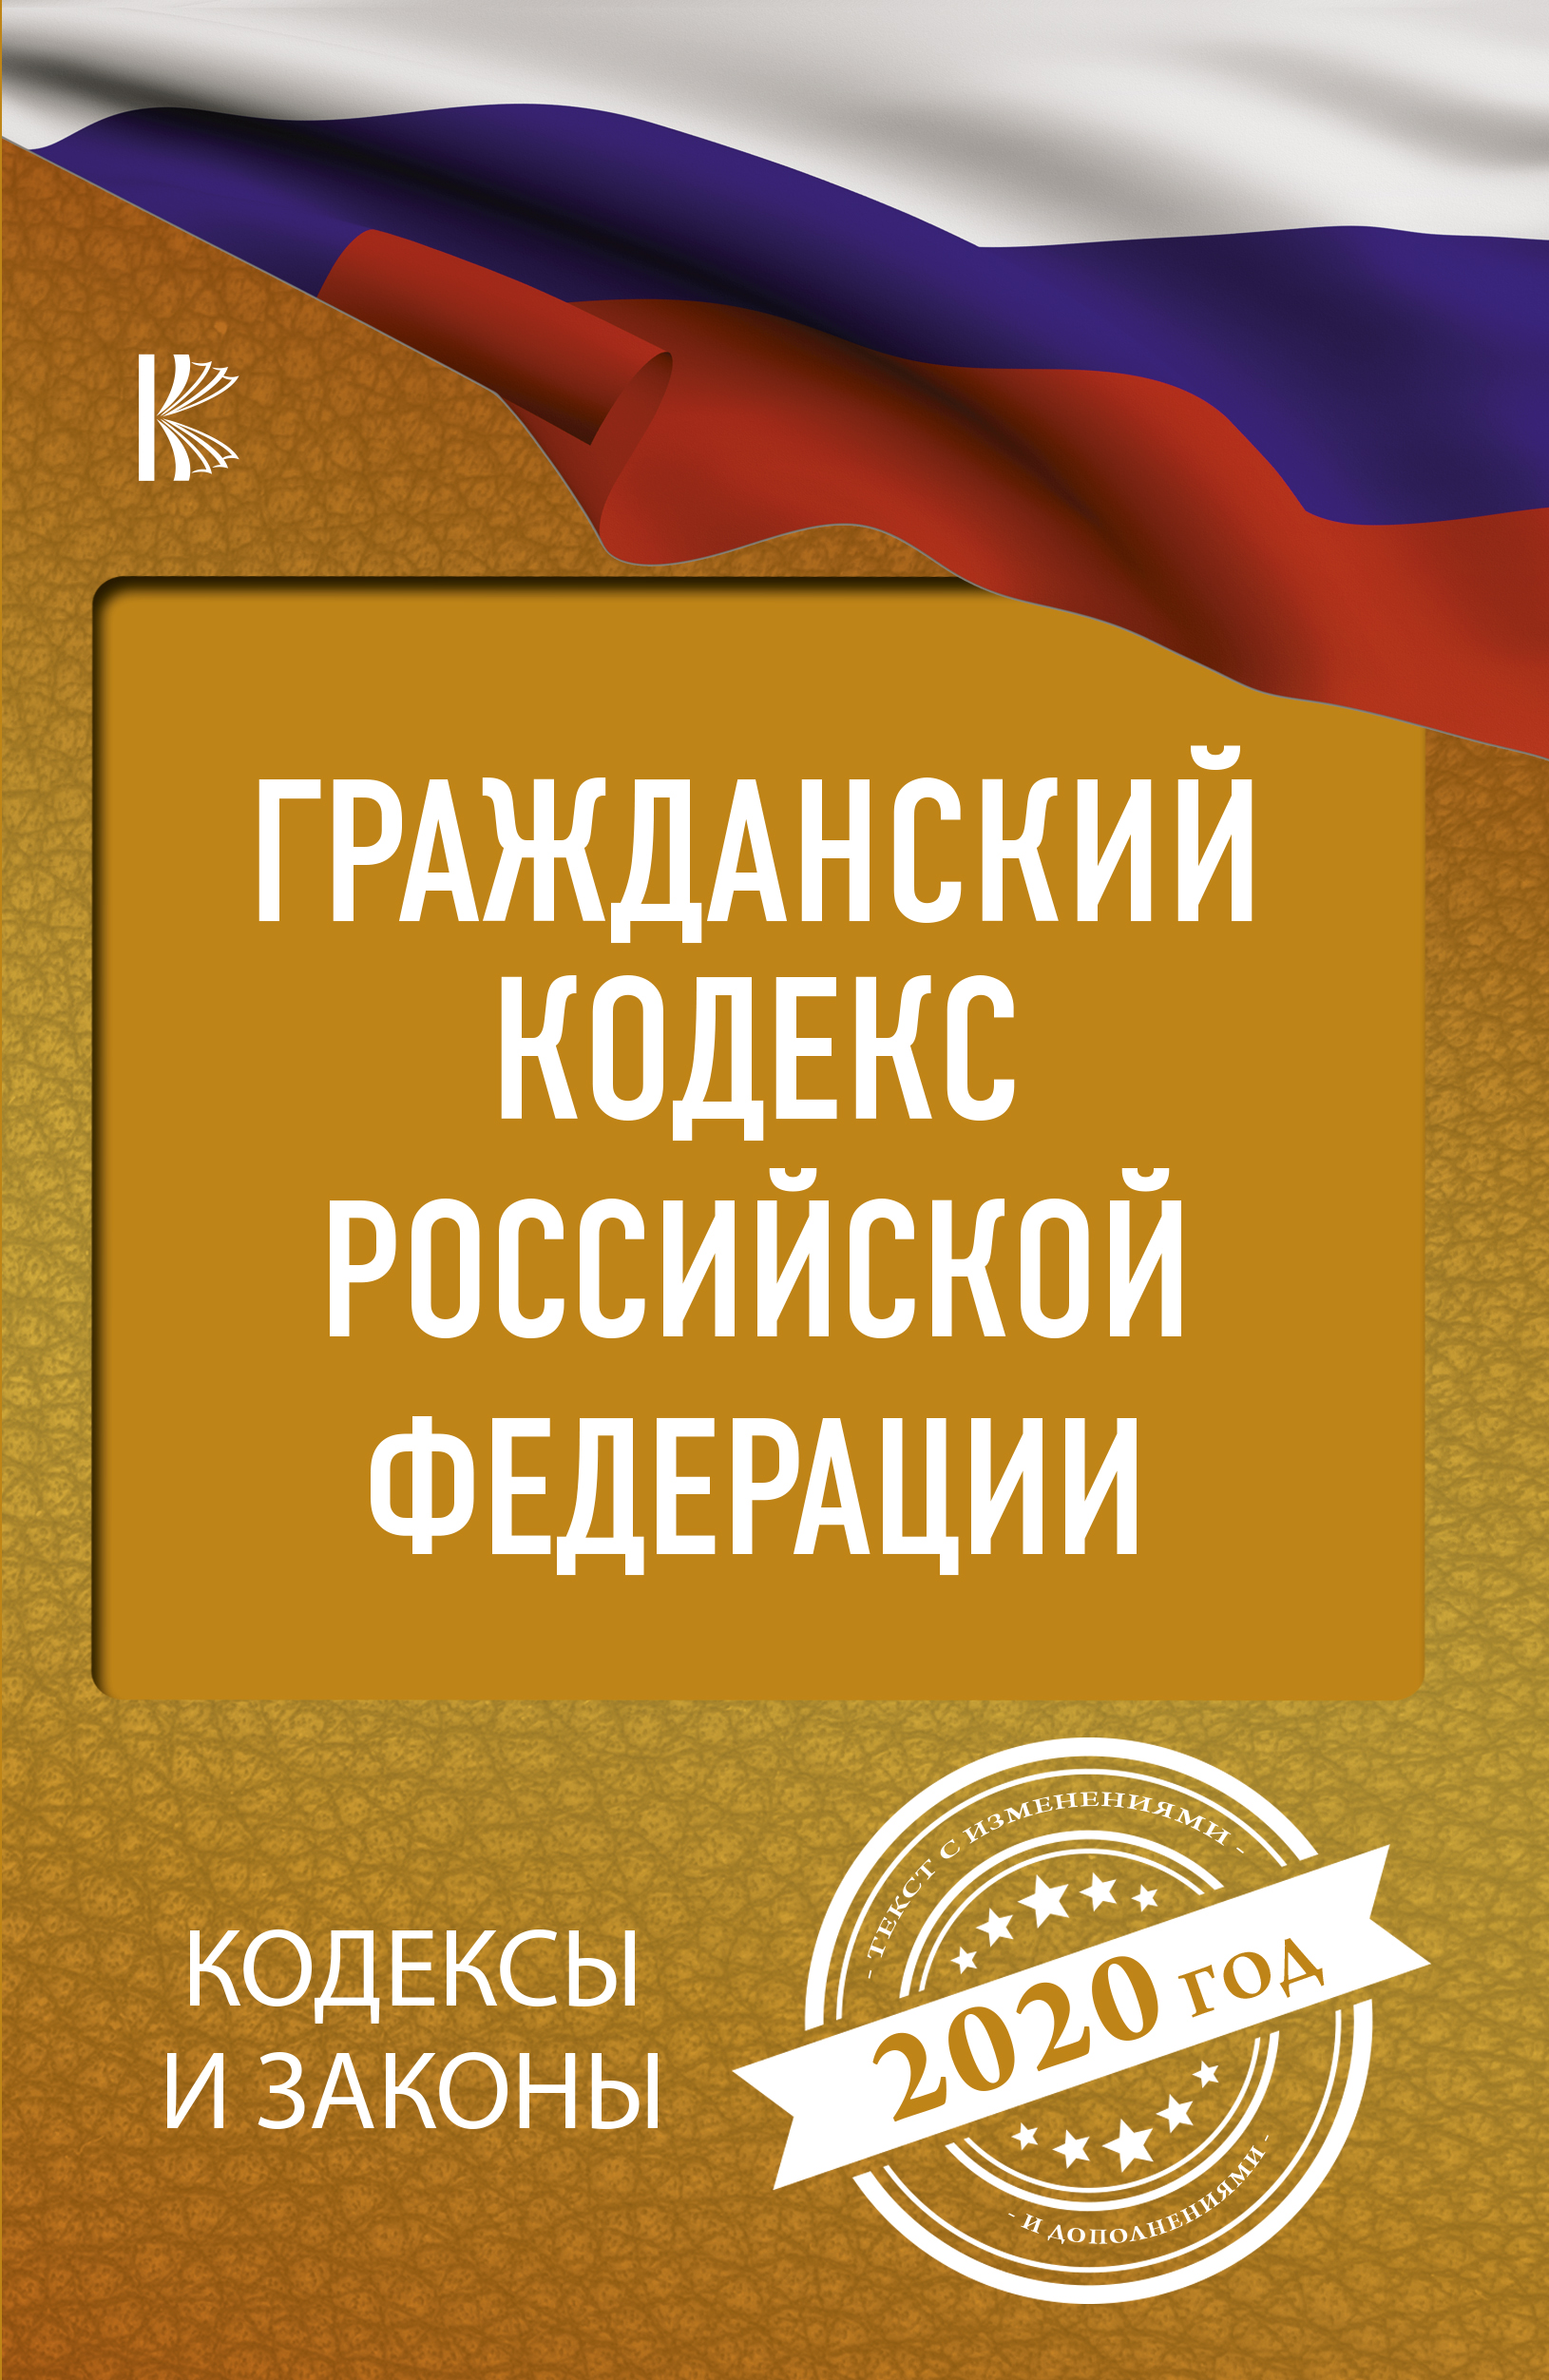  Гражданский Кодекс Российской Федерации на 2020 год - страница 0